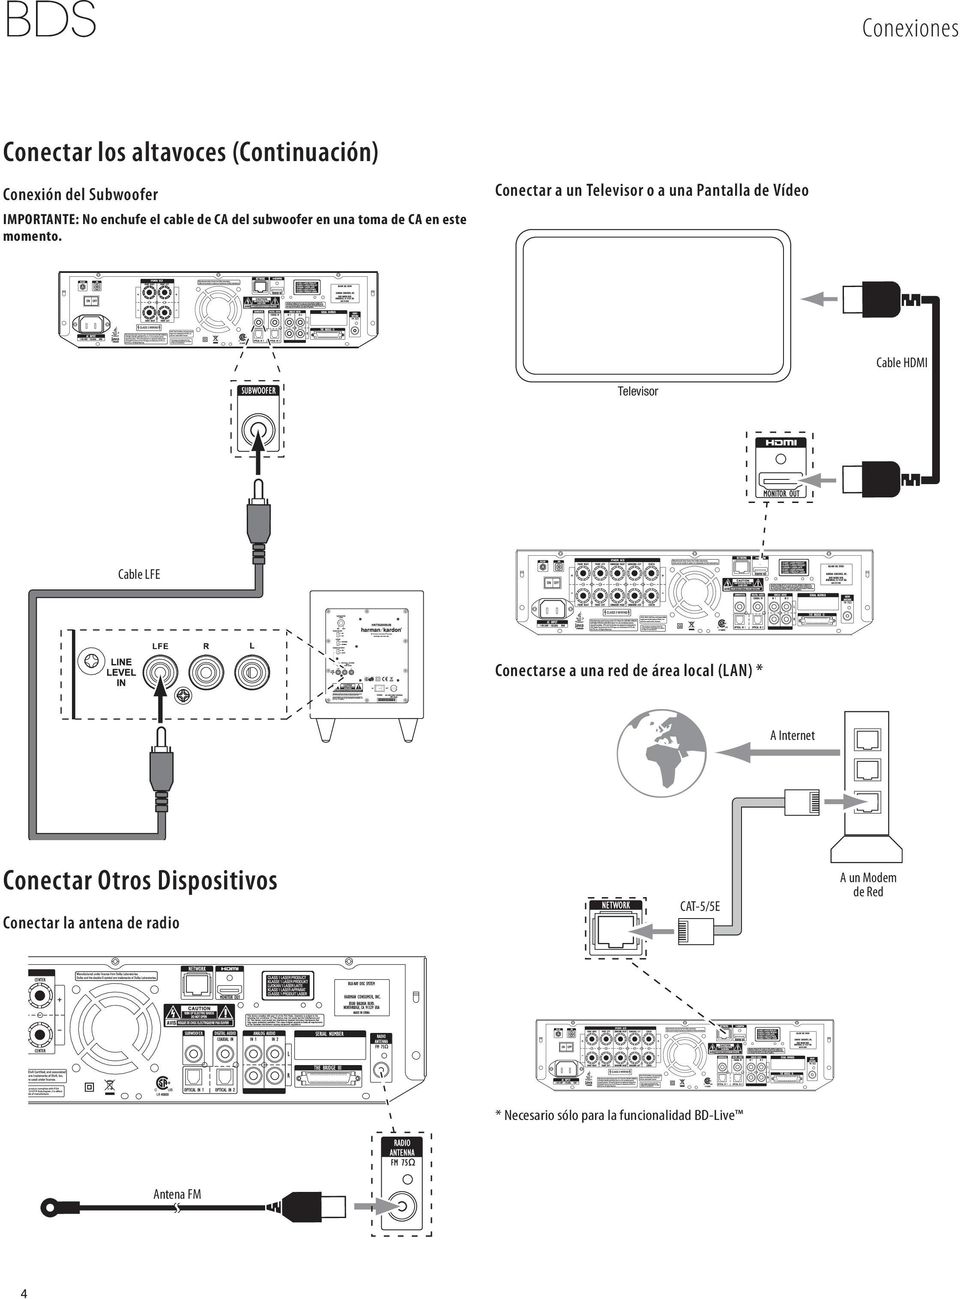 Conectar a un Televisor o a una Pantalla de Vídeo Cable HDMI Televisor Cable LFE Conectarse a una red de